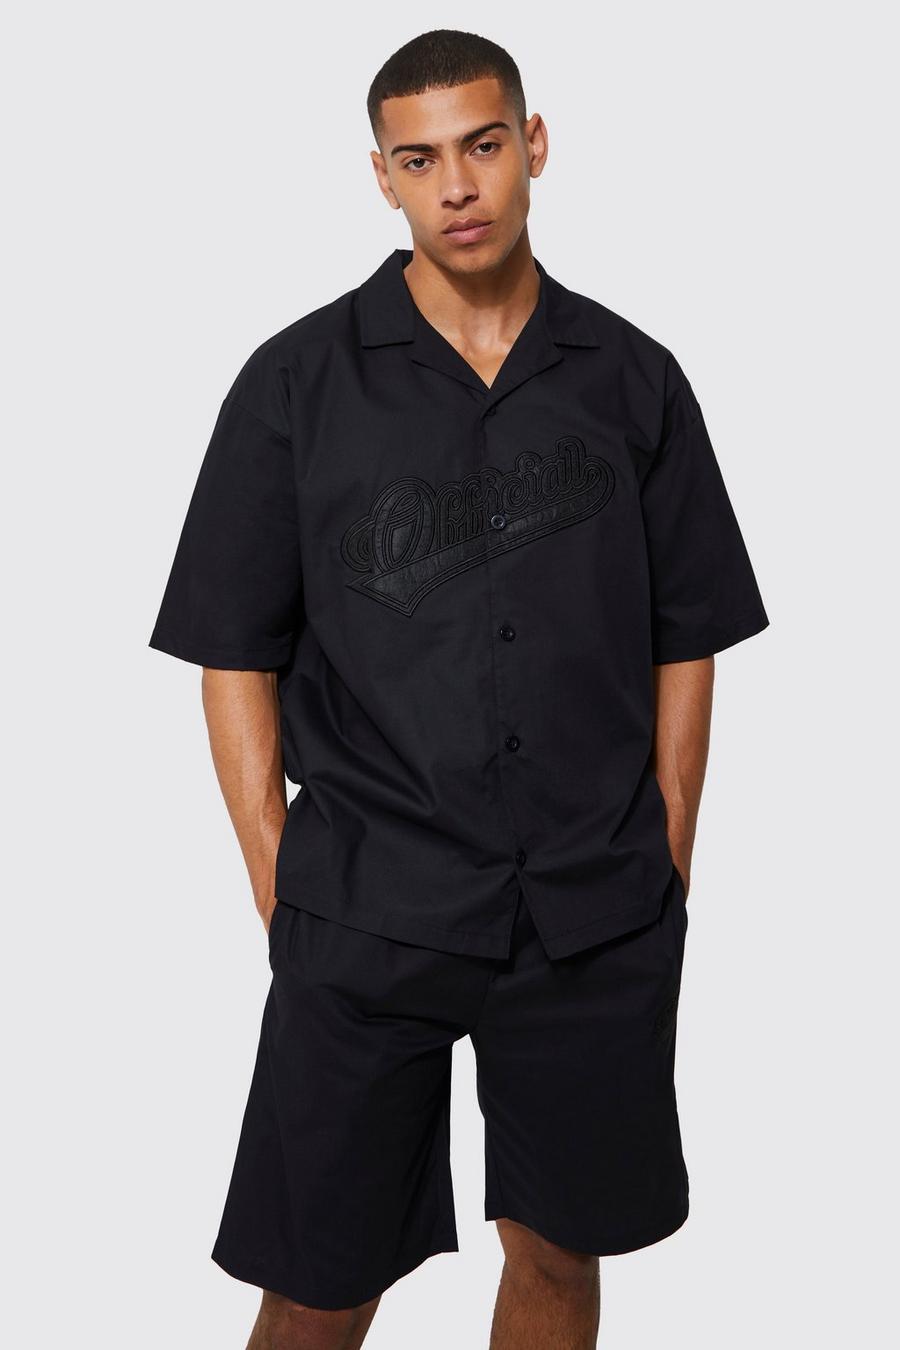 Black Short Sleeve Oversized Revere Official Shirt & Short Set